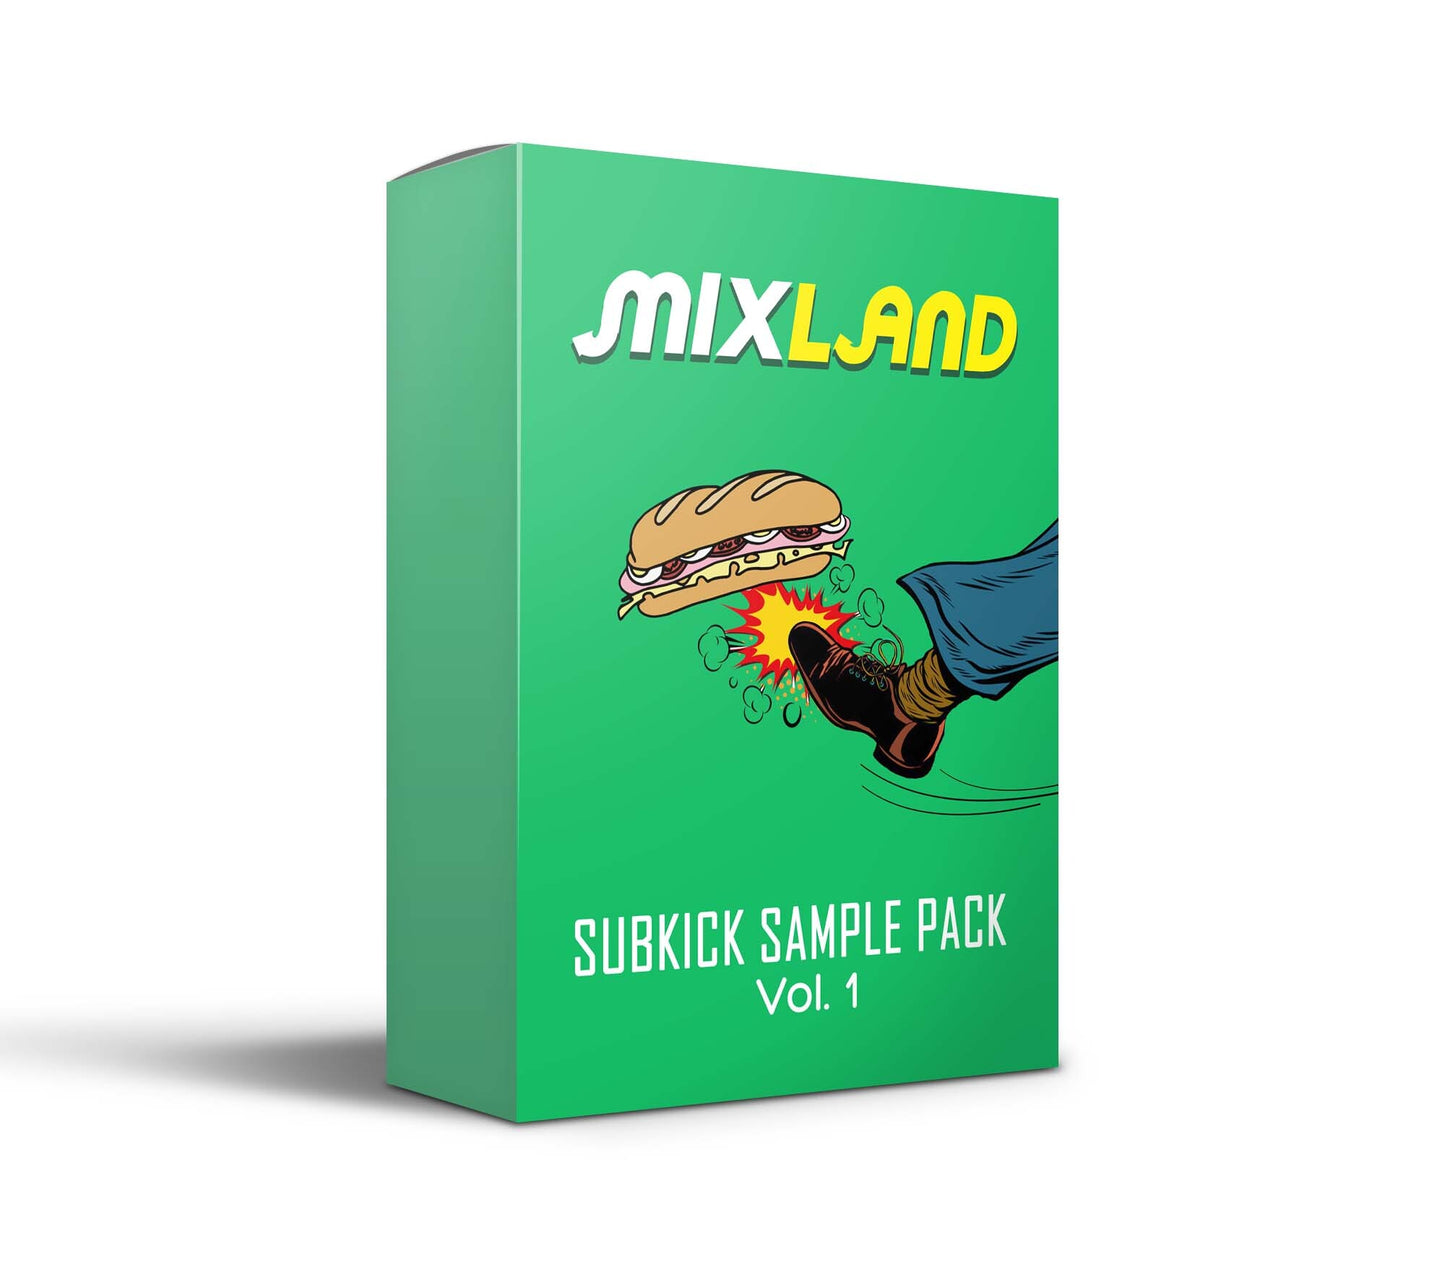 Subkick Sample Pack Vol. 1